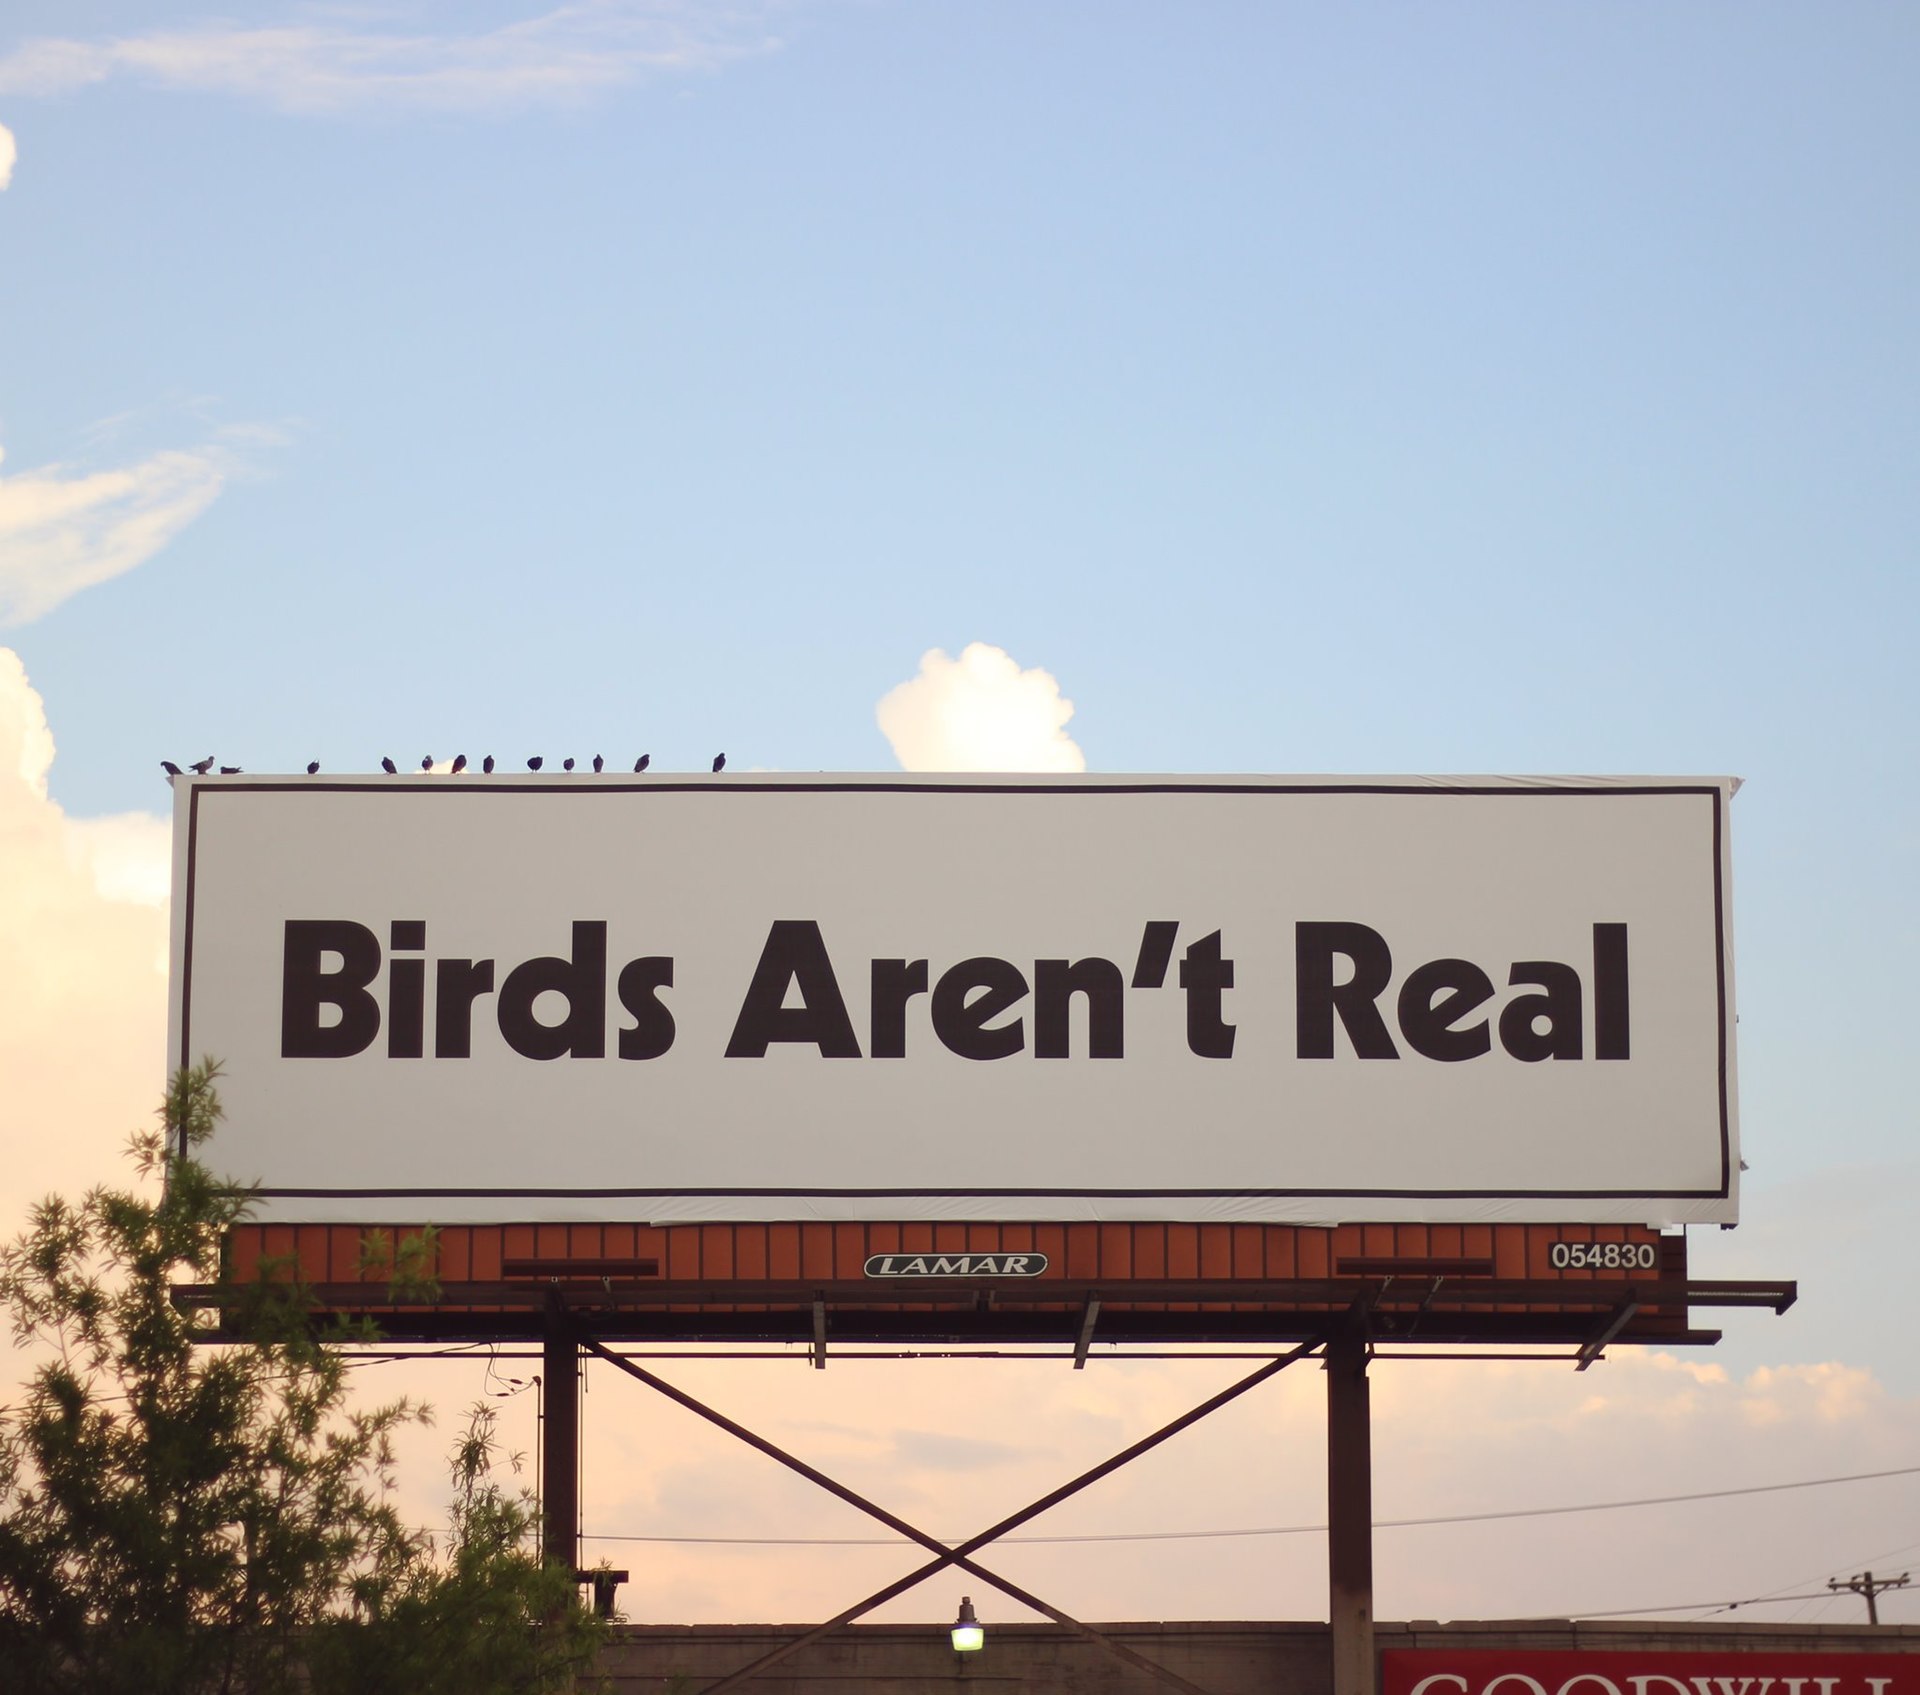 La finta teoria del complotto secondo cui “gli uccelli non esistono”